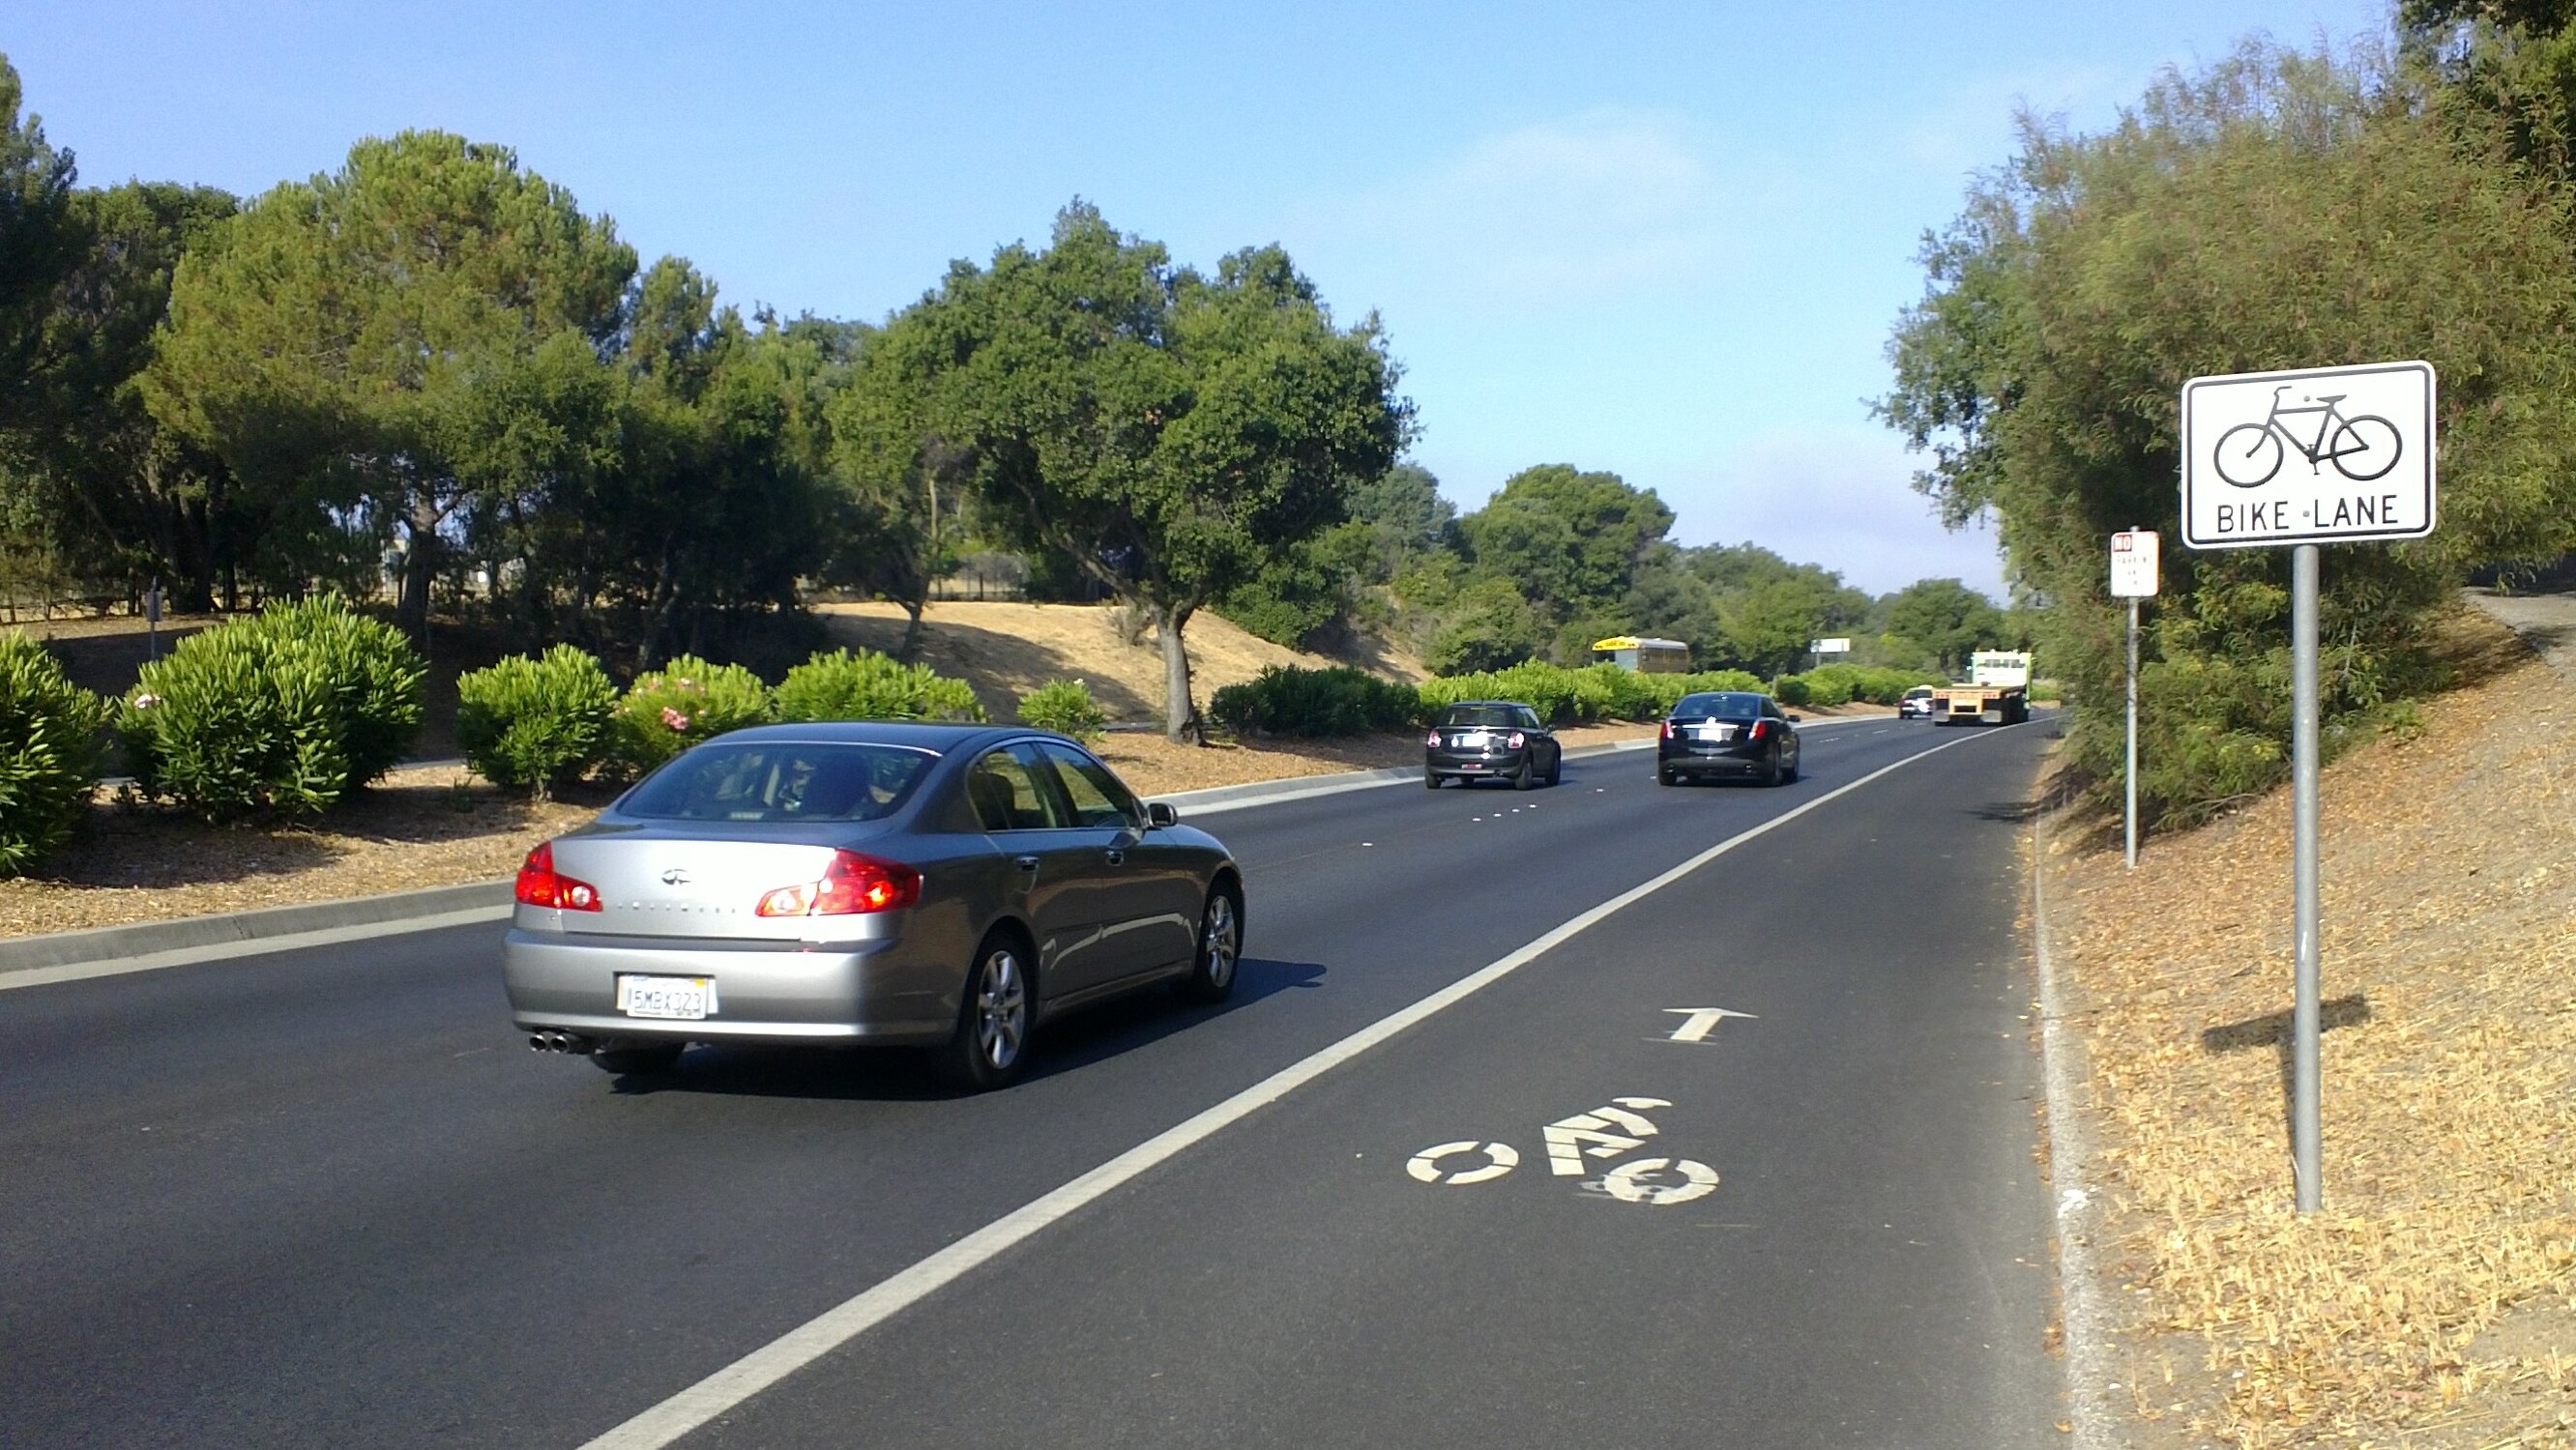 Stanfordin ympäristössä polkupyöräilijät on huomioitu Amerikkalaisittain poikkeuksellisen hyvin.